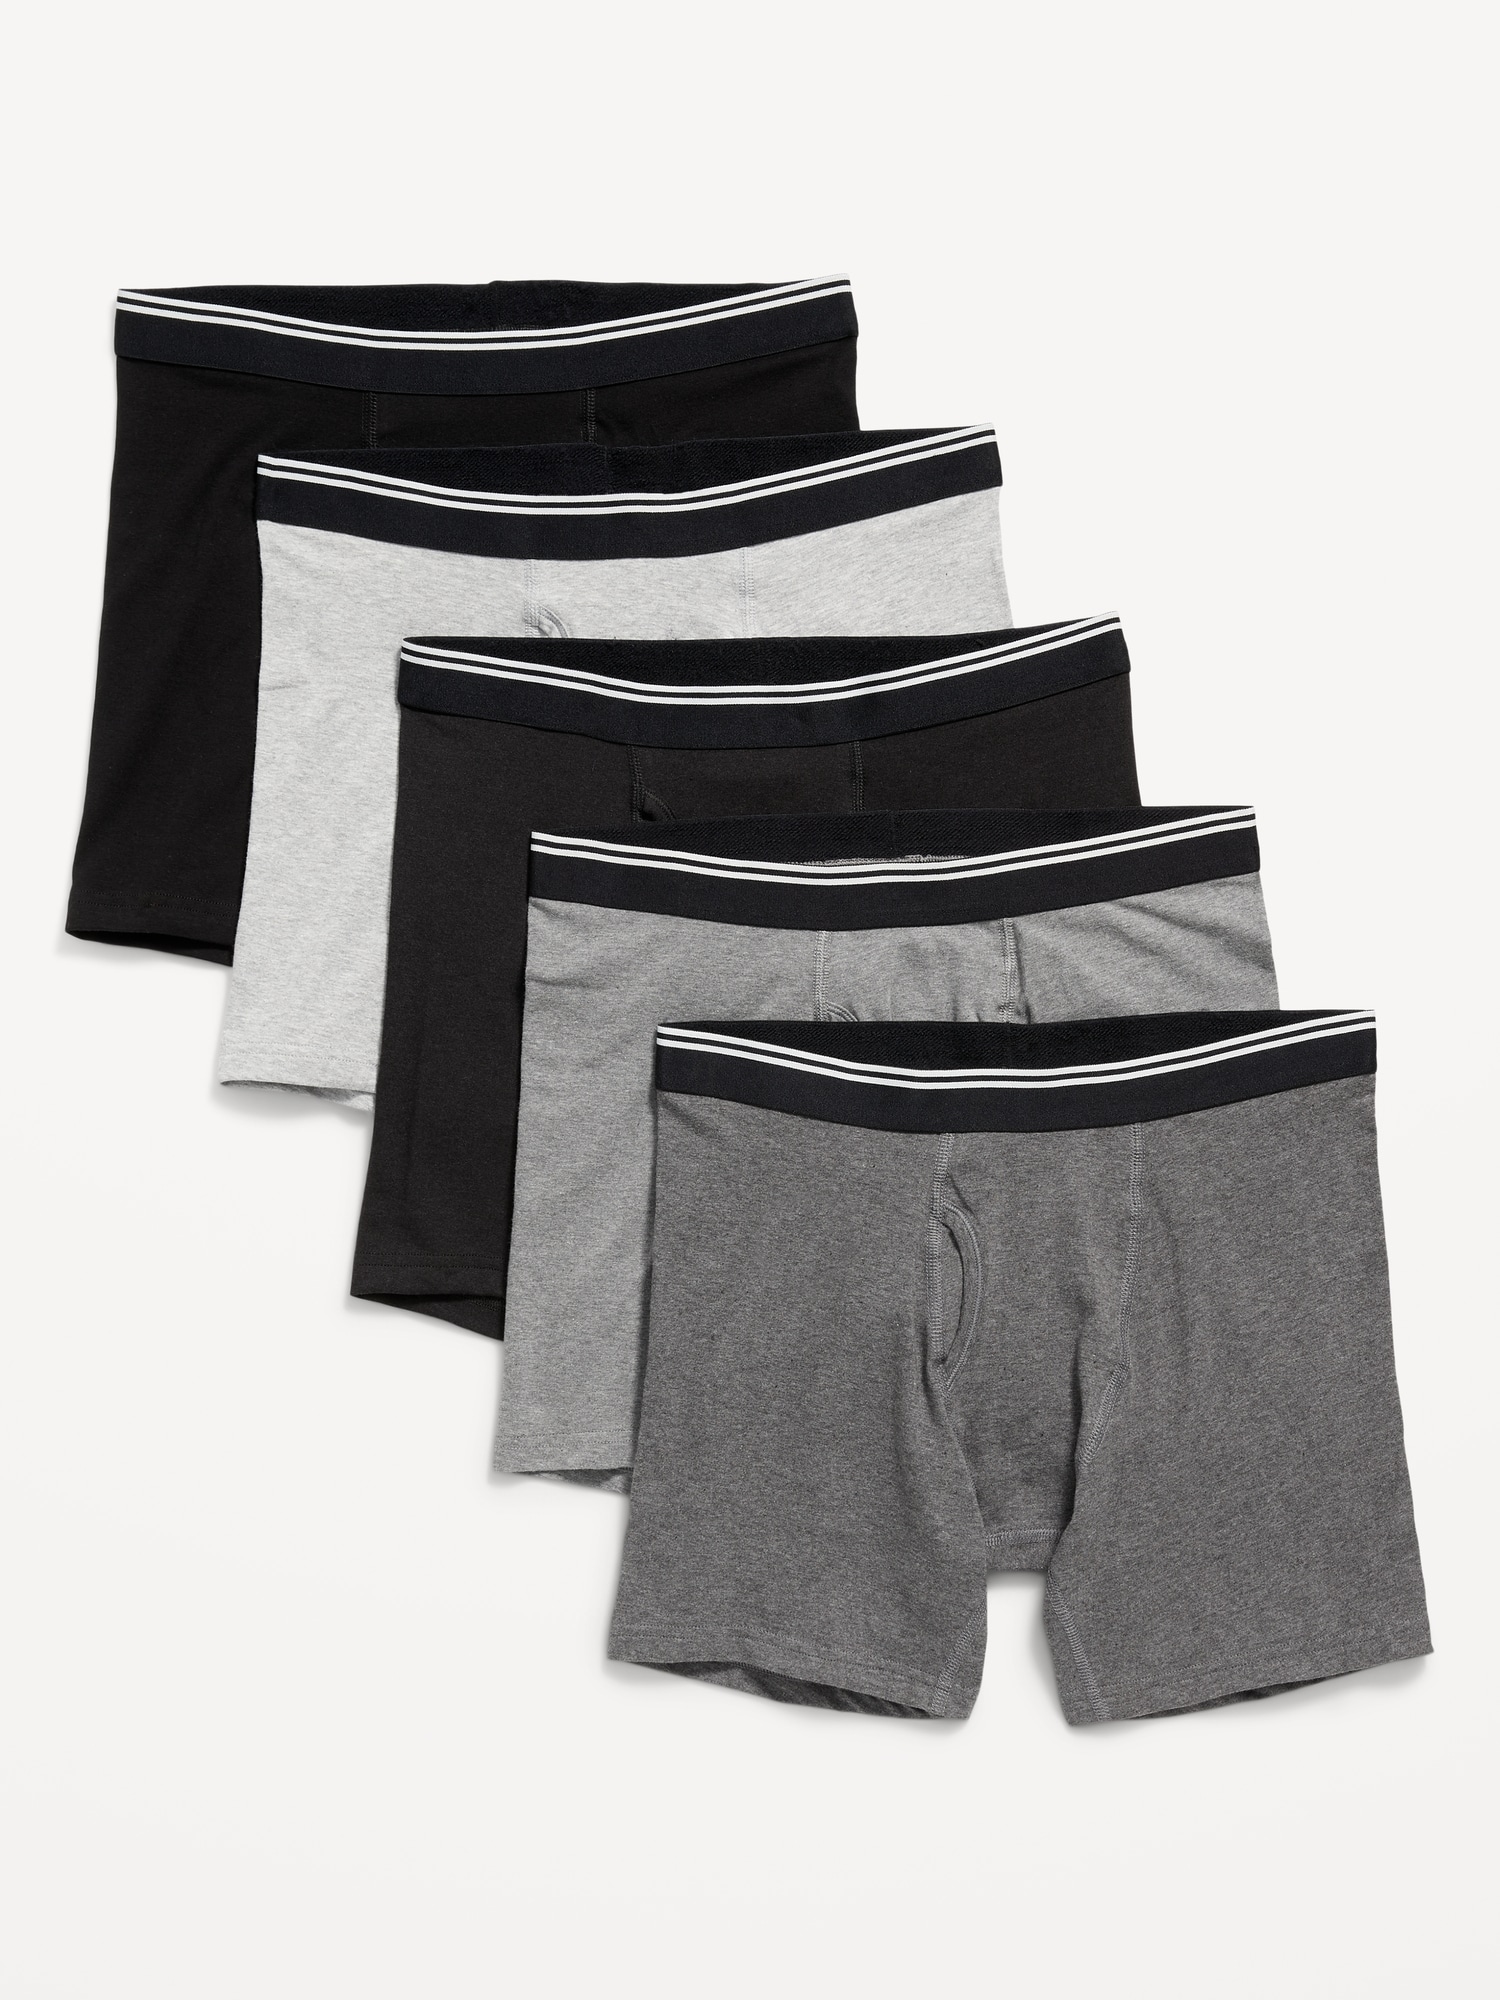 Soft-Washed Built-In Flex Underwear Briefs 5-Pack